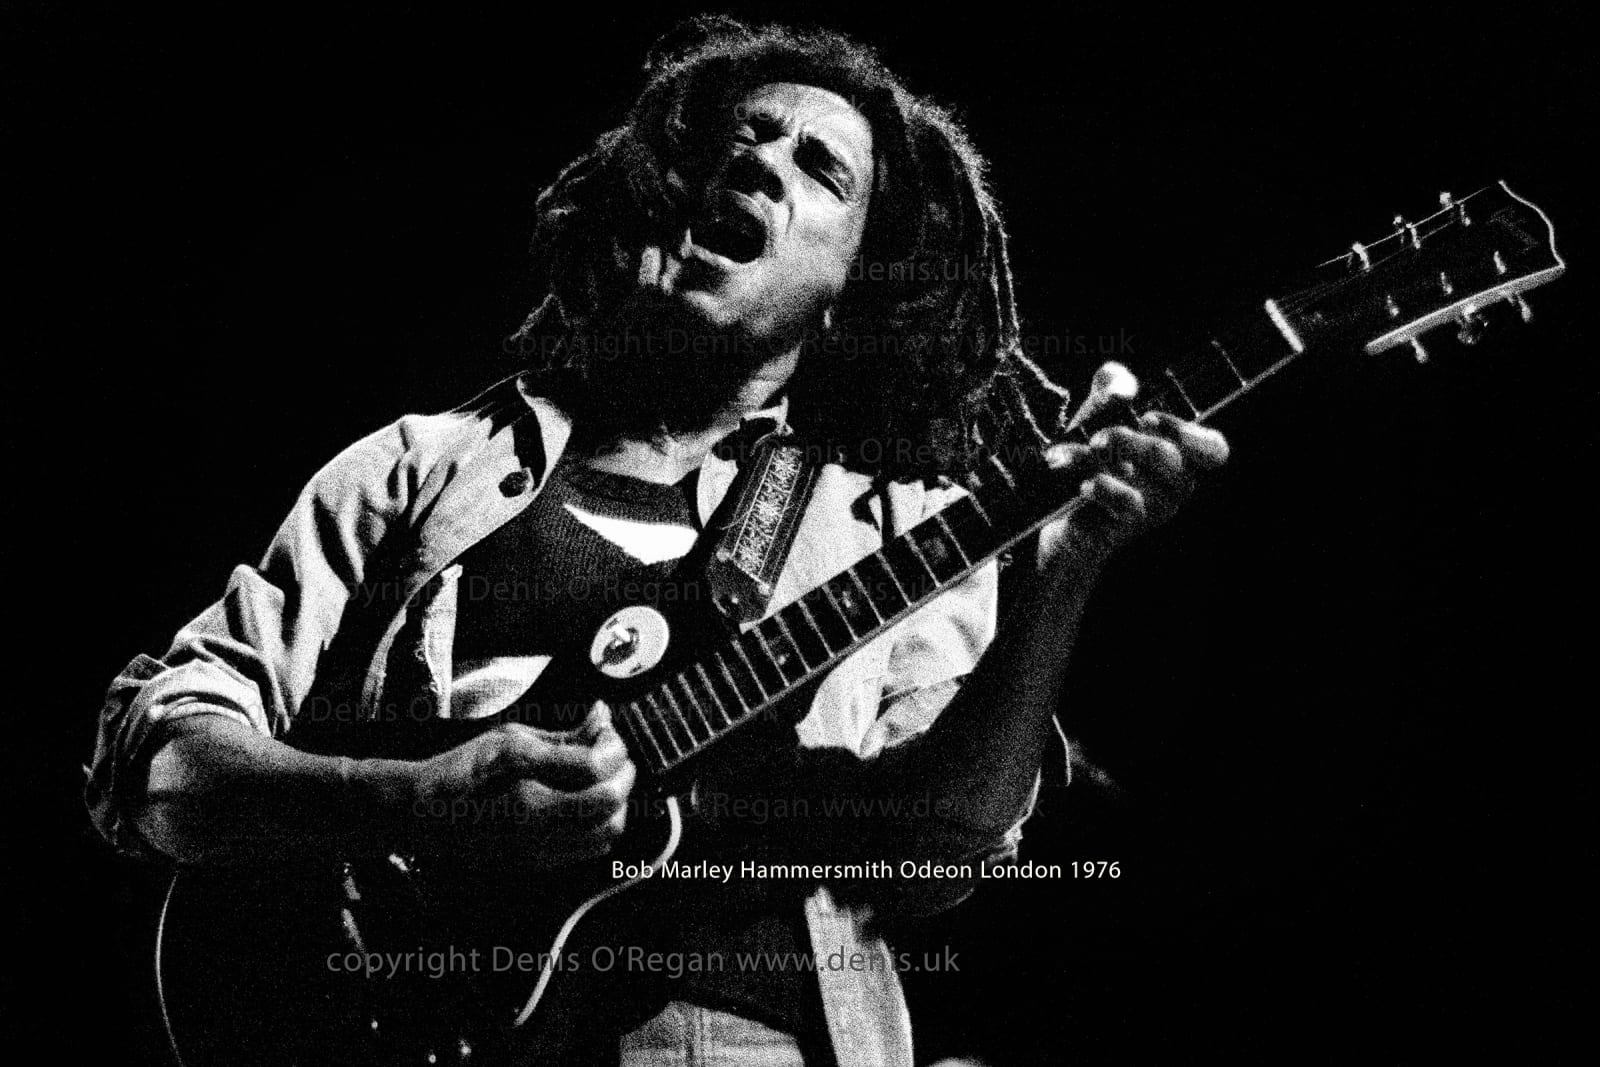 BOB MARLEY, Bob Marley Hammersmith Odeon, 1976